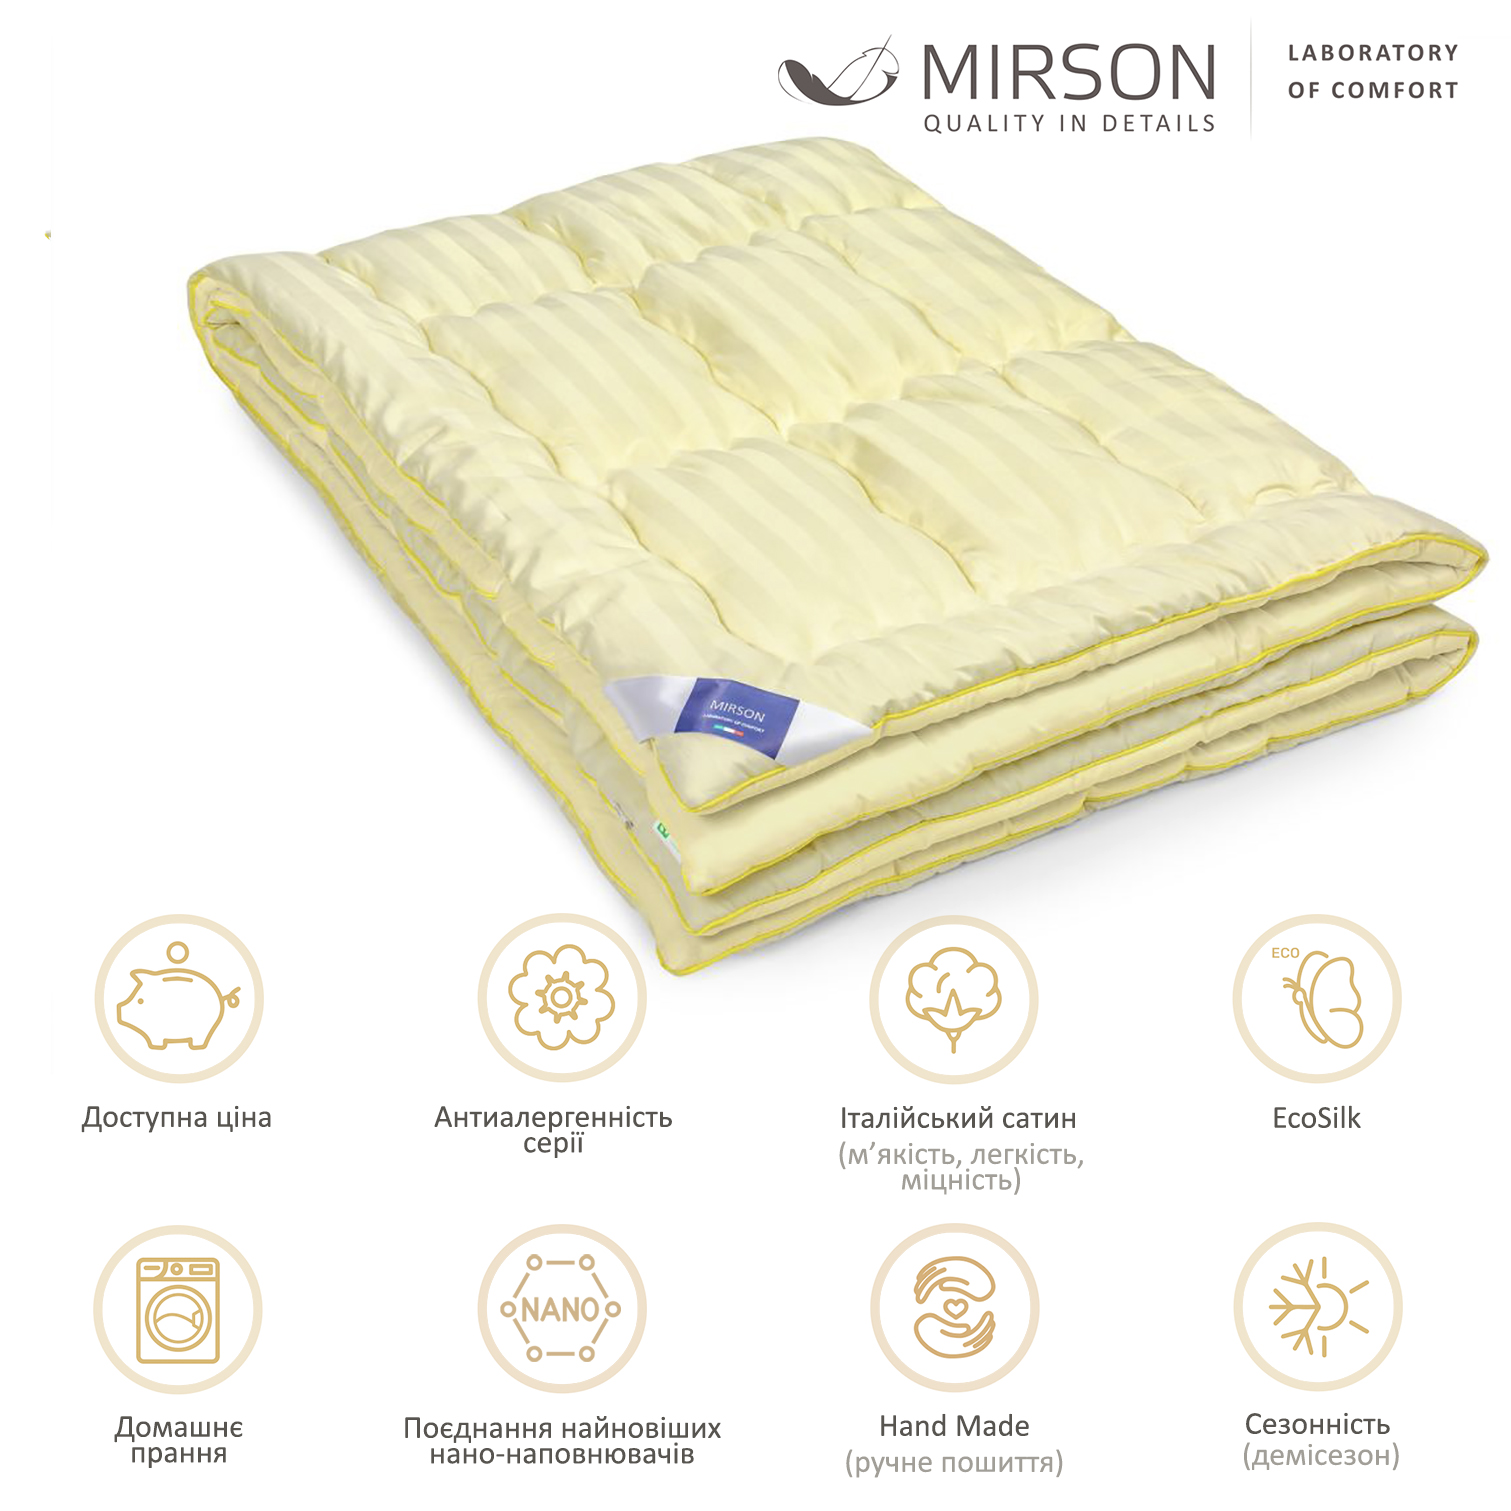 Одеяло антиаллергенное MirSon Carmela Hand Made EcoSilk №065, демисезонное, 172x205 см, светло-желтое - фото 4